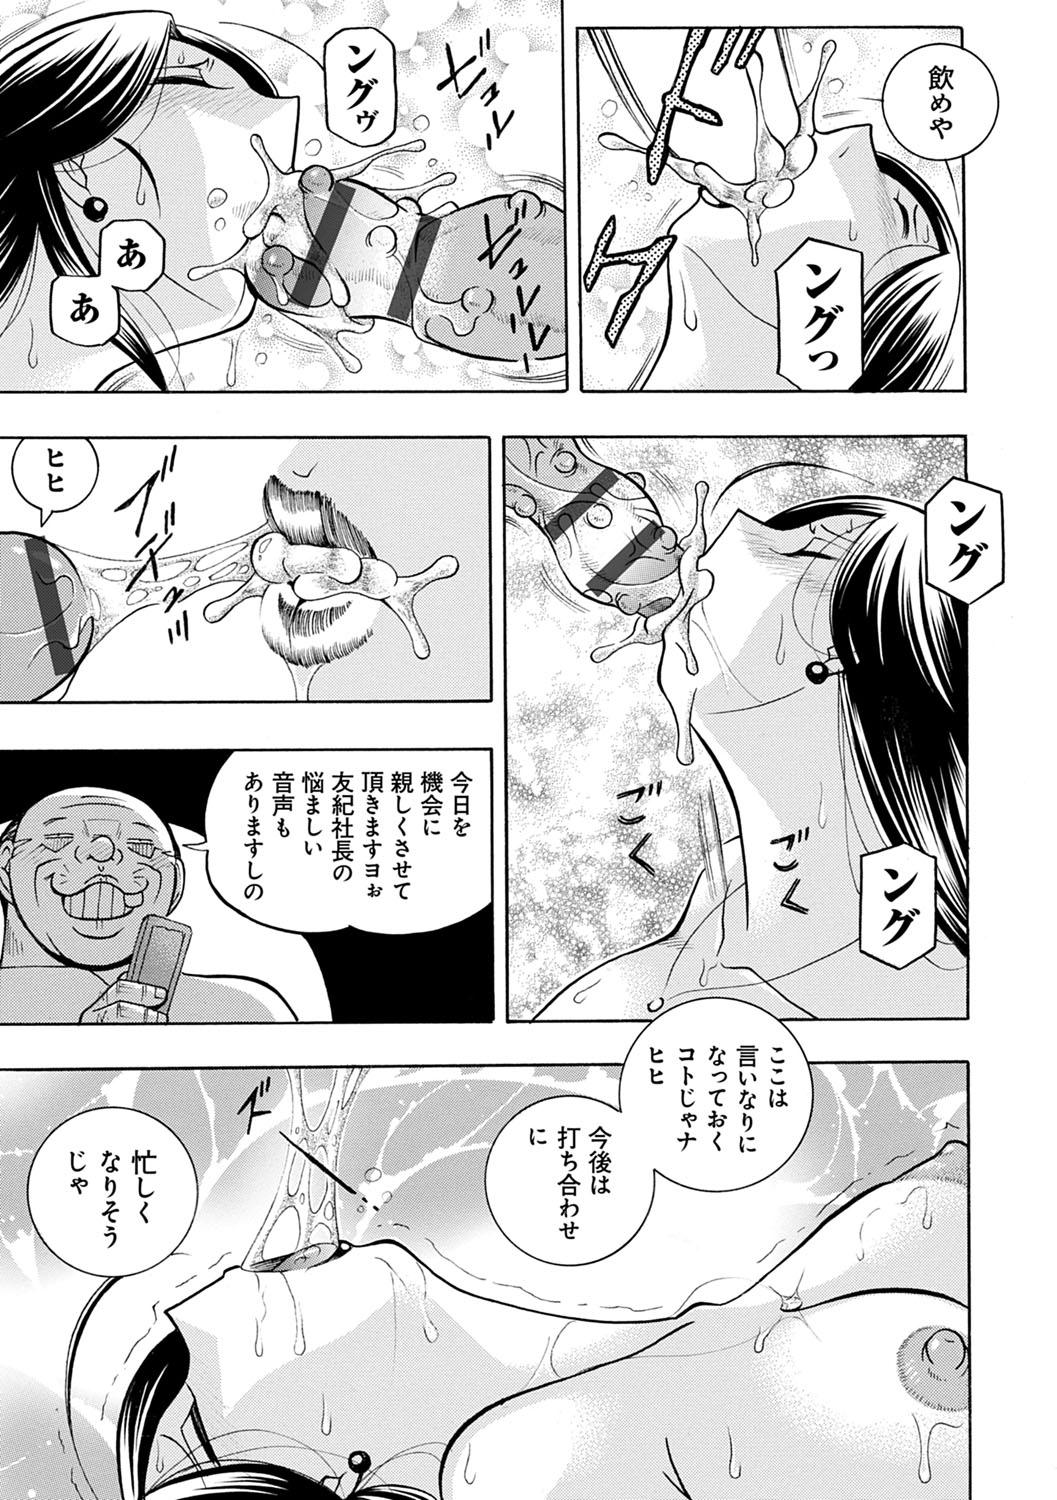 [Chuuka Naruto] Bijin Shachou Yuki ~Mitsuyaku no Nikusettai~ - YUKI of The Beautiful Chief Executive Officer ~The secret sweet treaty by sexual reception~ [Digital] 75